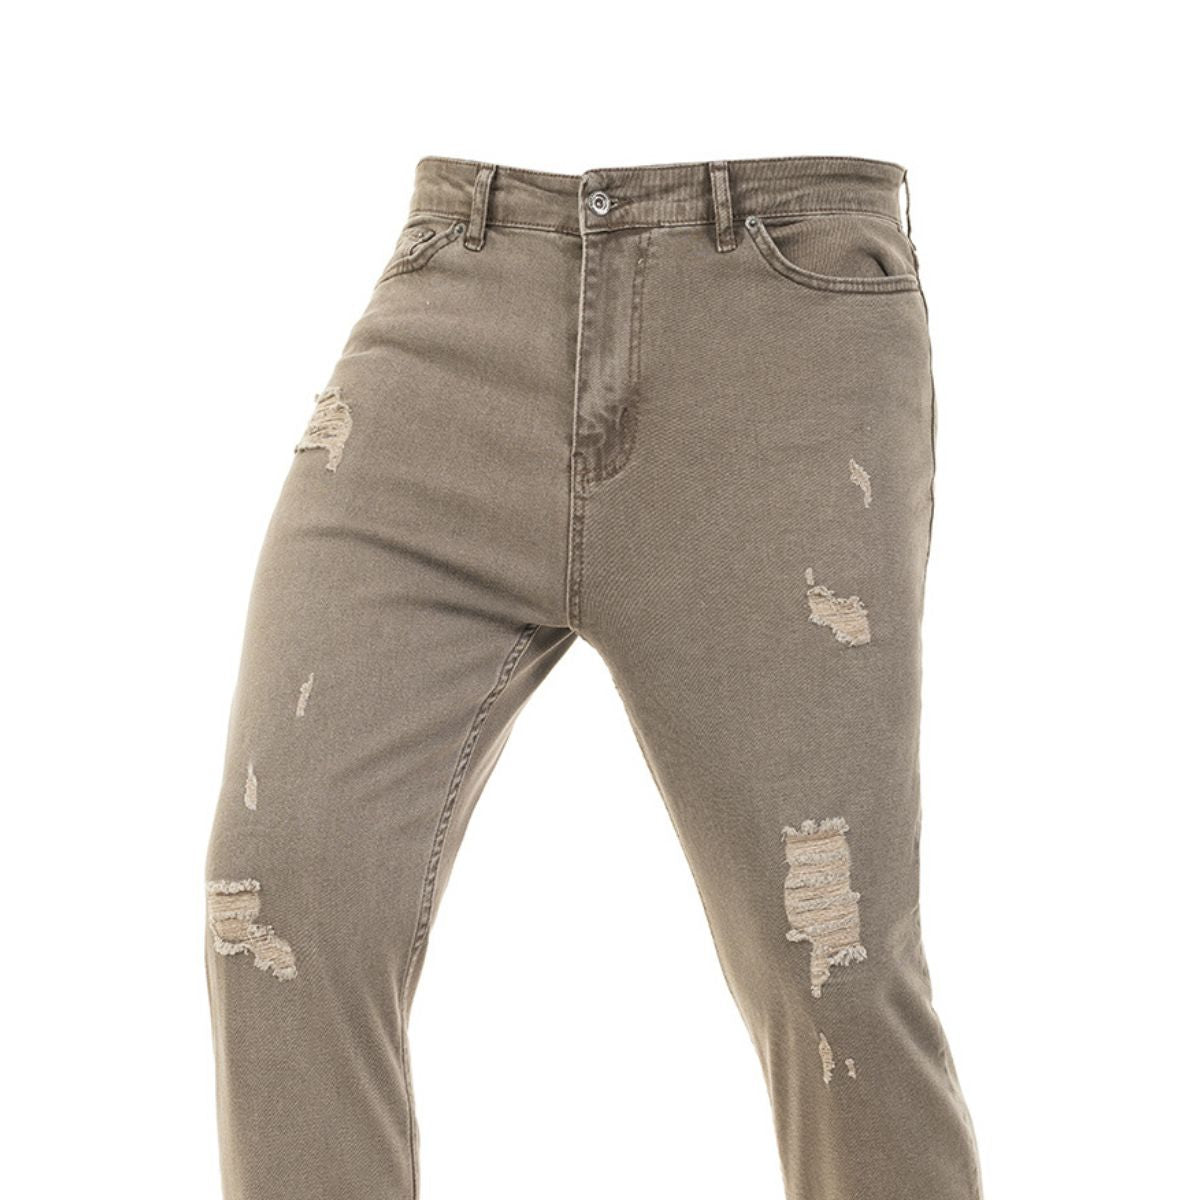 Ανδρικό Jeans με Σκισίματα (3365) - BEIGE - Panda Clothing